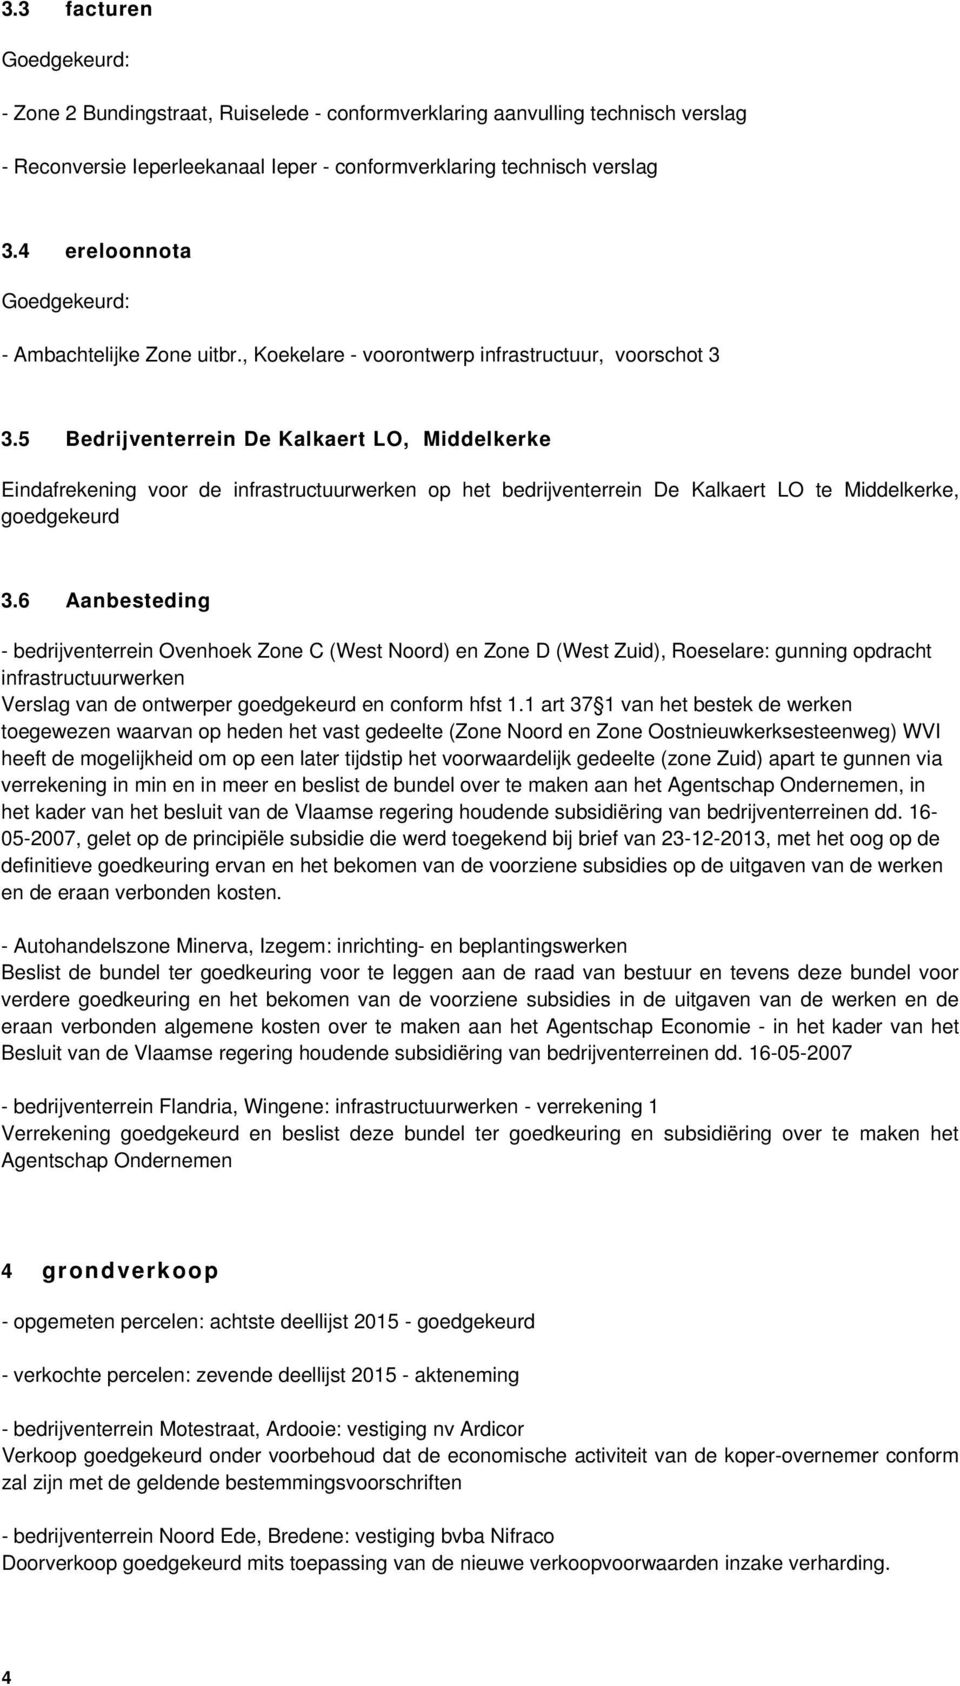 5 Bedrijventerrein De Kalkaert LO, Middelkerke Eindafrekening voor de infrastructuurwerken op het bedrijventerrein De Kalkaert LO te Middelkerke, goedgekeurd 3.